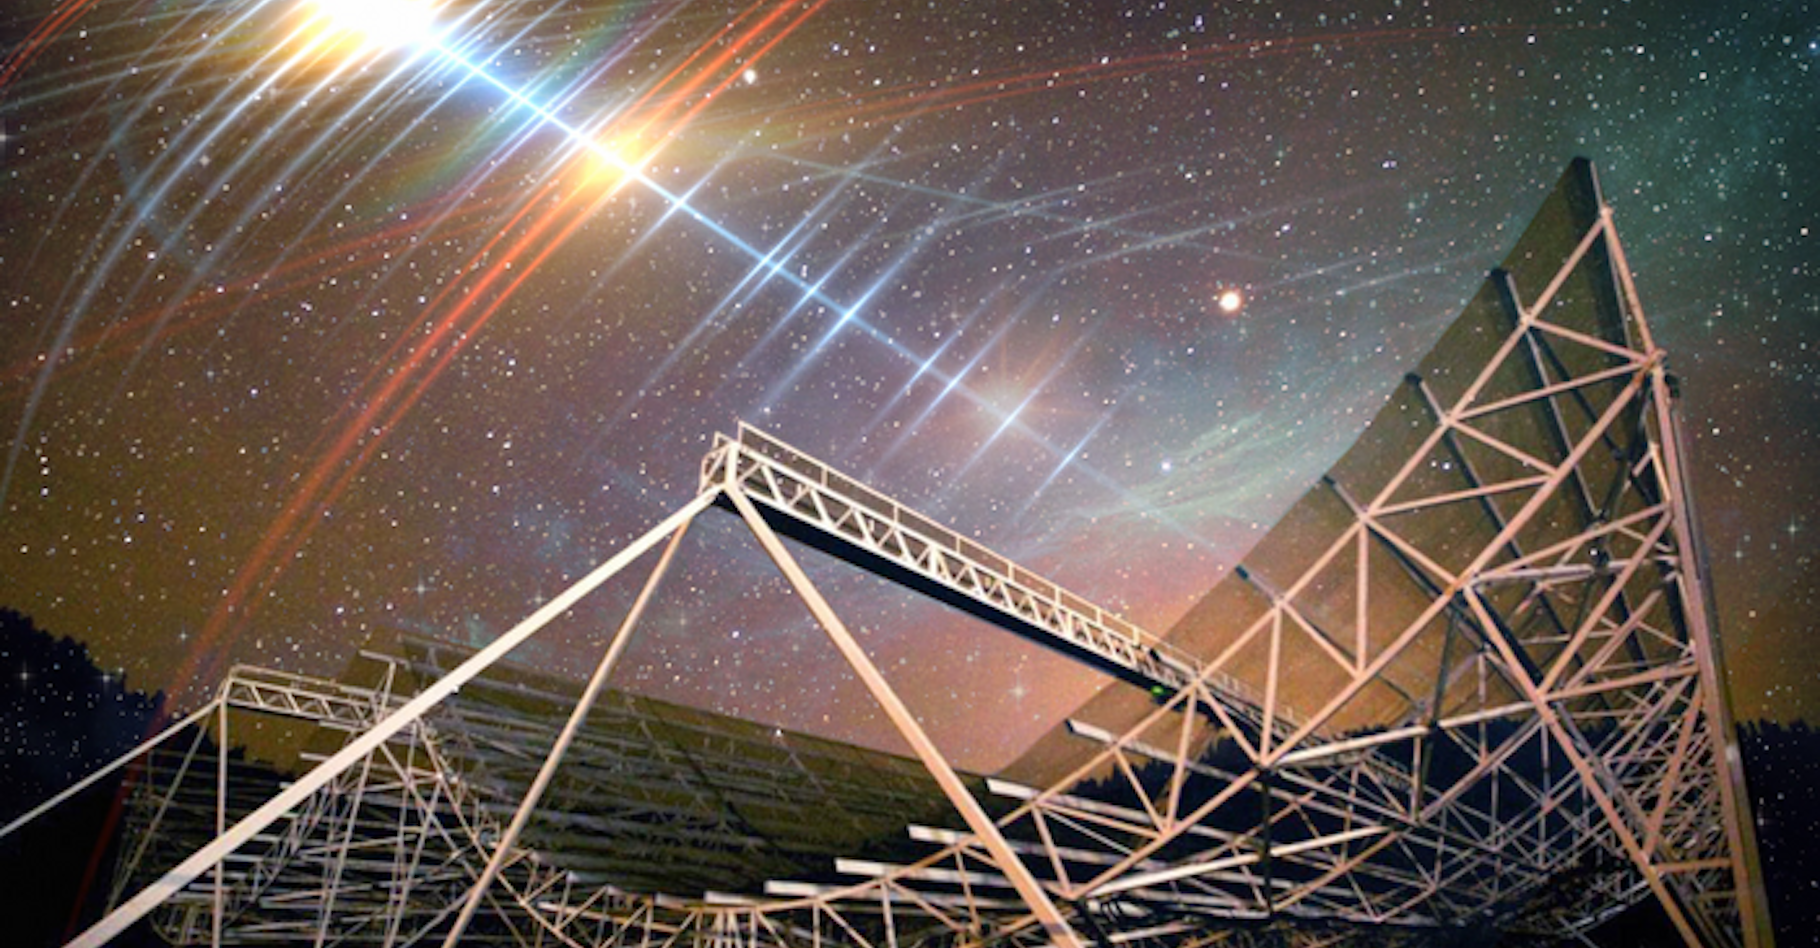 Les astronomes ont détecté — grâce au grand radiotélescope Chime (Canadian Hydrogen Intensity Mapping Experiment) ici en illustration — un sursaut radio rapide (FRB) provenant d’une galaxie lointaine et d’une régularité surprenante. Nommé FRB 20191221A, ce sursaut radio rapide, ou FRB, est actuellement le plus durable, avec le schéma périodique le plus clair, détecté à ce jour. © CHIME, MIT